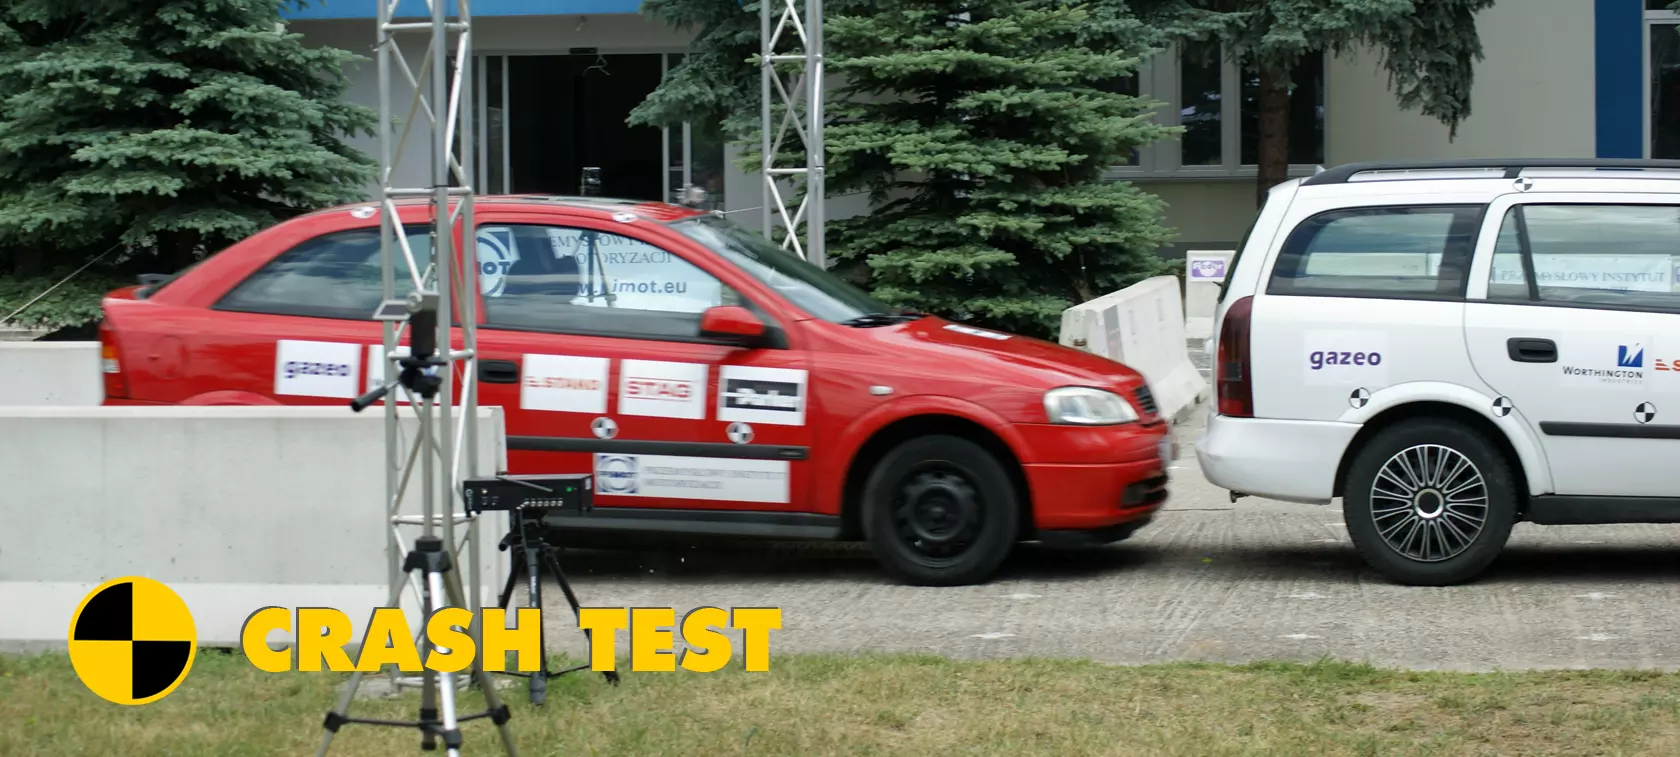 Autogas-powered car crash test